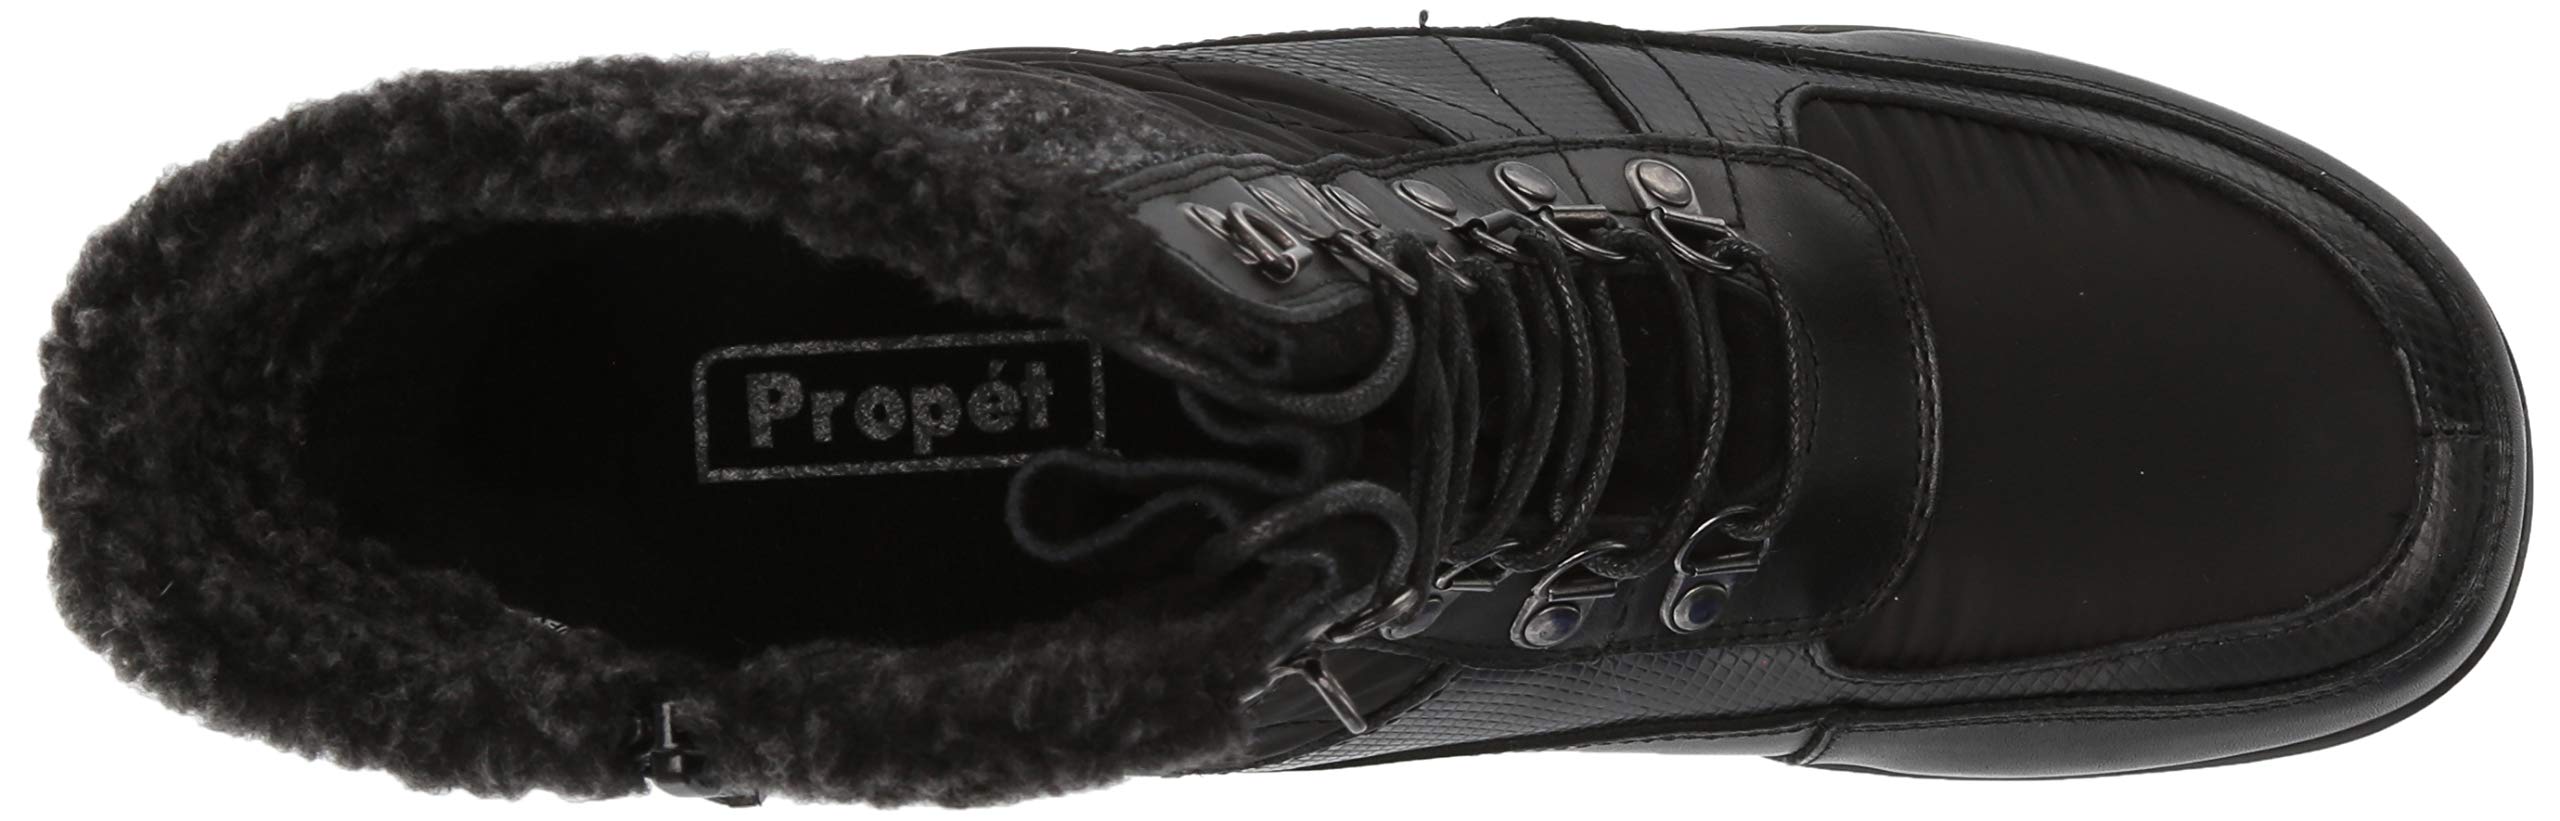 Propét Women's Delaney Frost Snow Boot, Black, 6 X-Wide